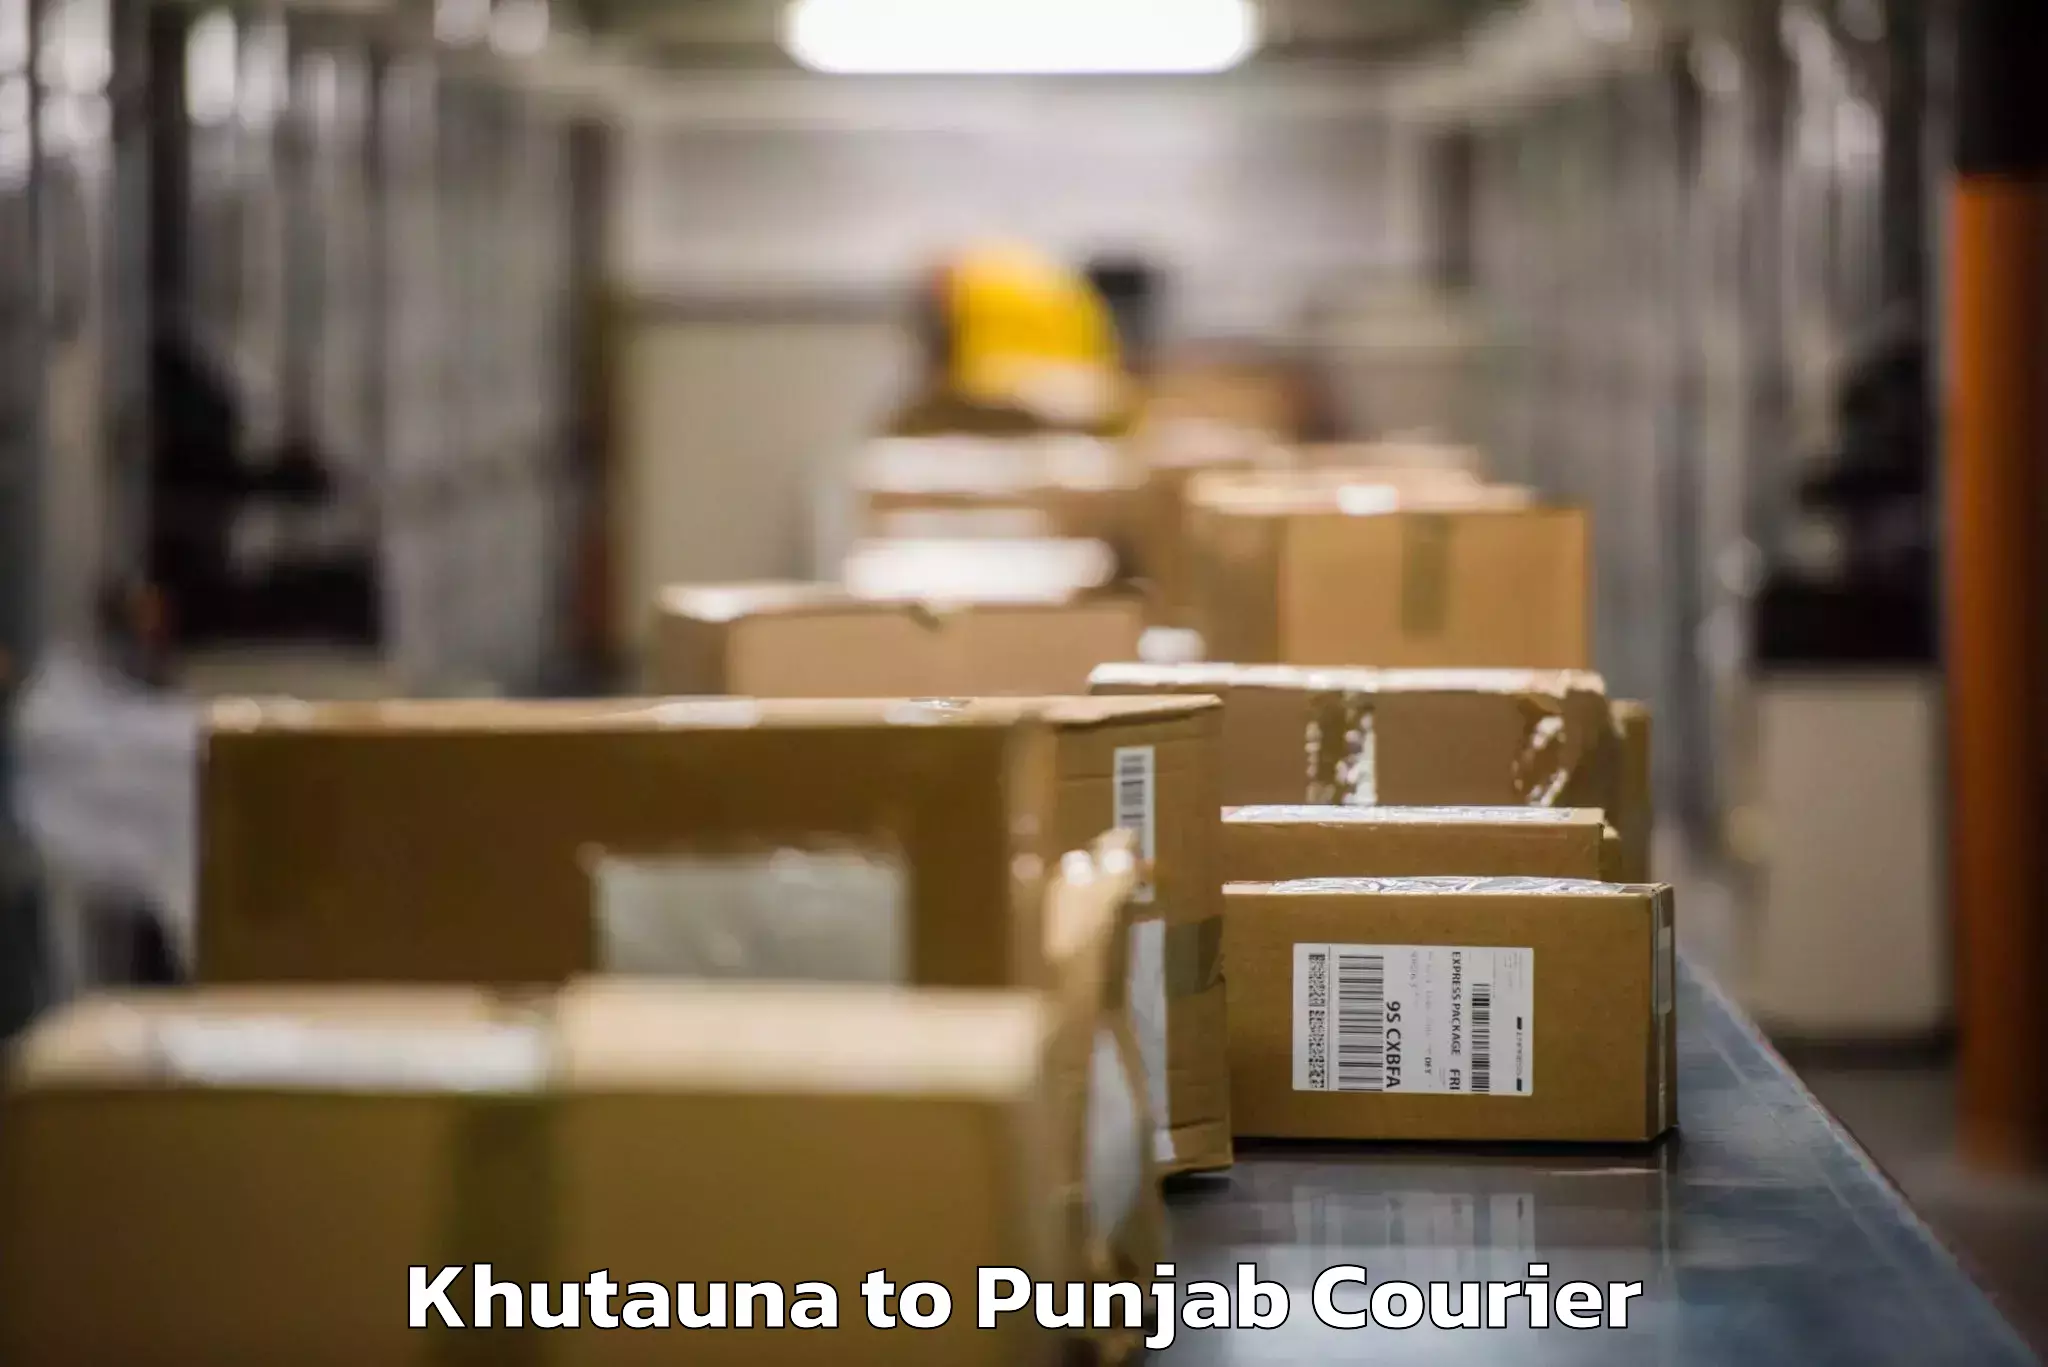 Baggage transport technology Khutauna to Punjab